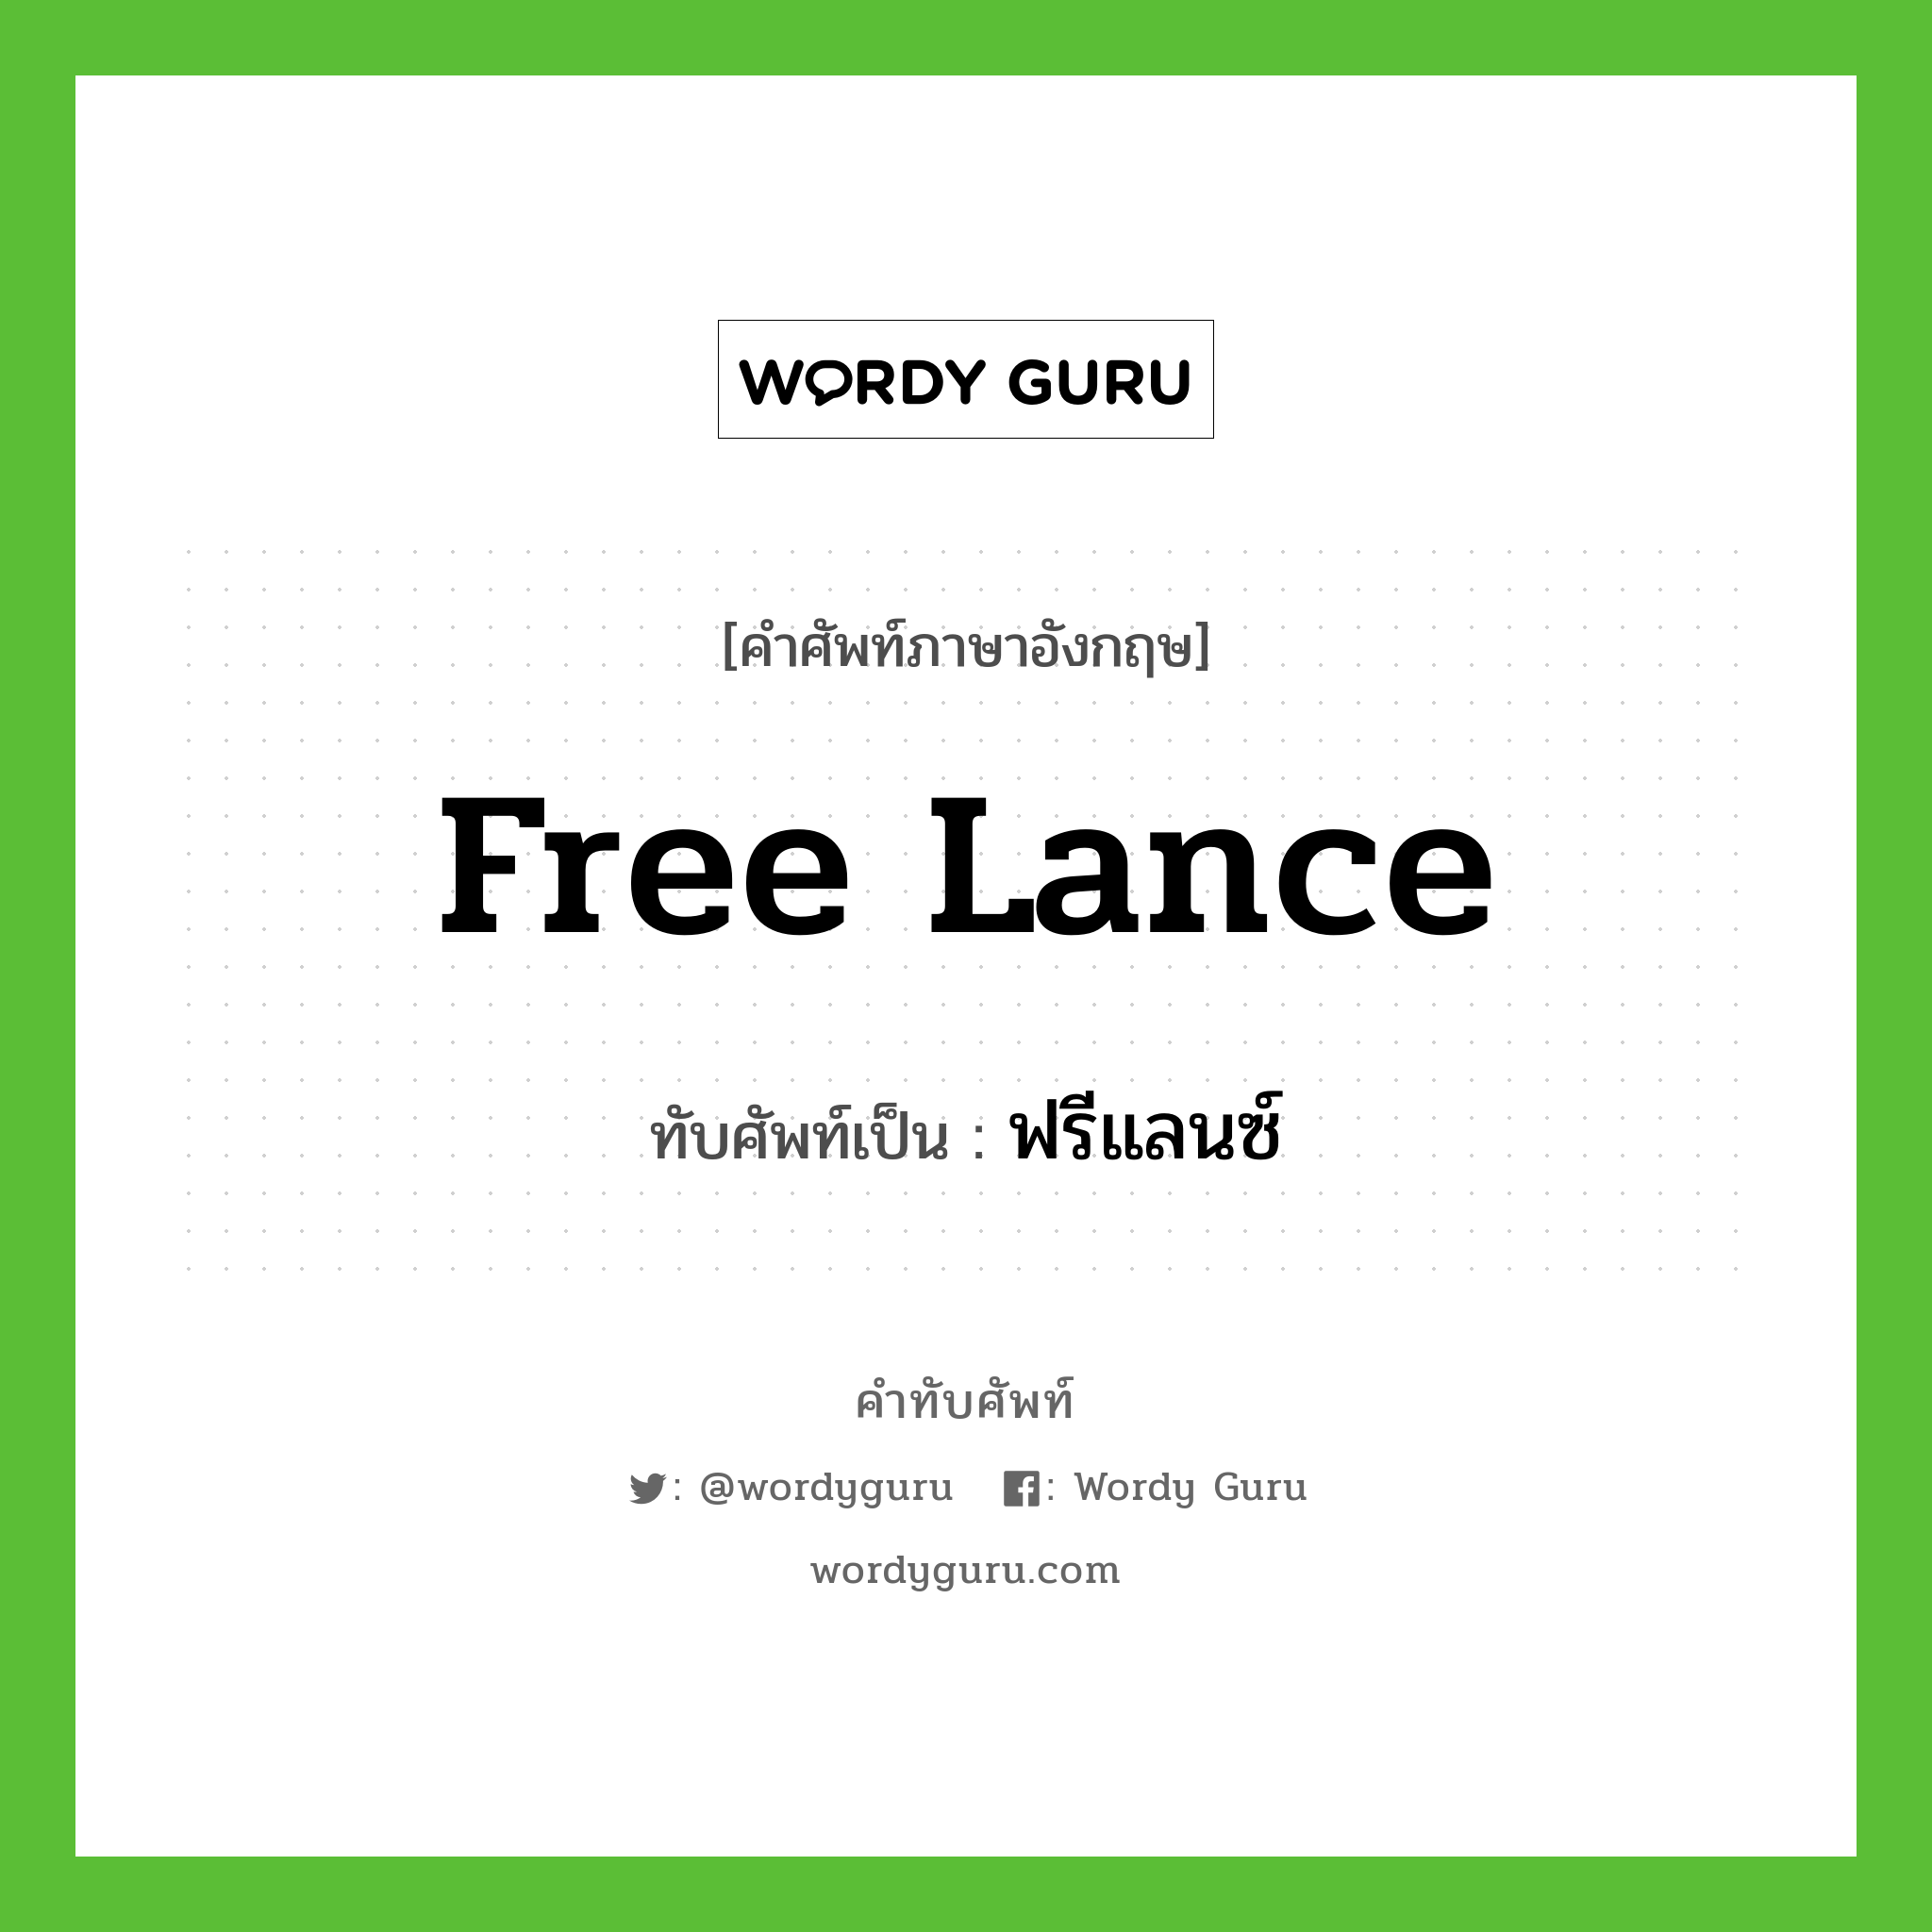 free lance เขียนเป็นคำไทยว่าอะไร?, คำศัพท์ภาษาอังกฤษ free lance ทับศัพท์เป็น ฟรีแลนซ์